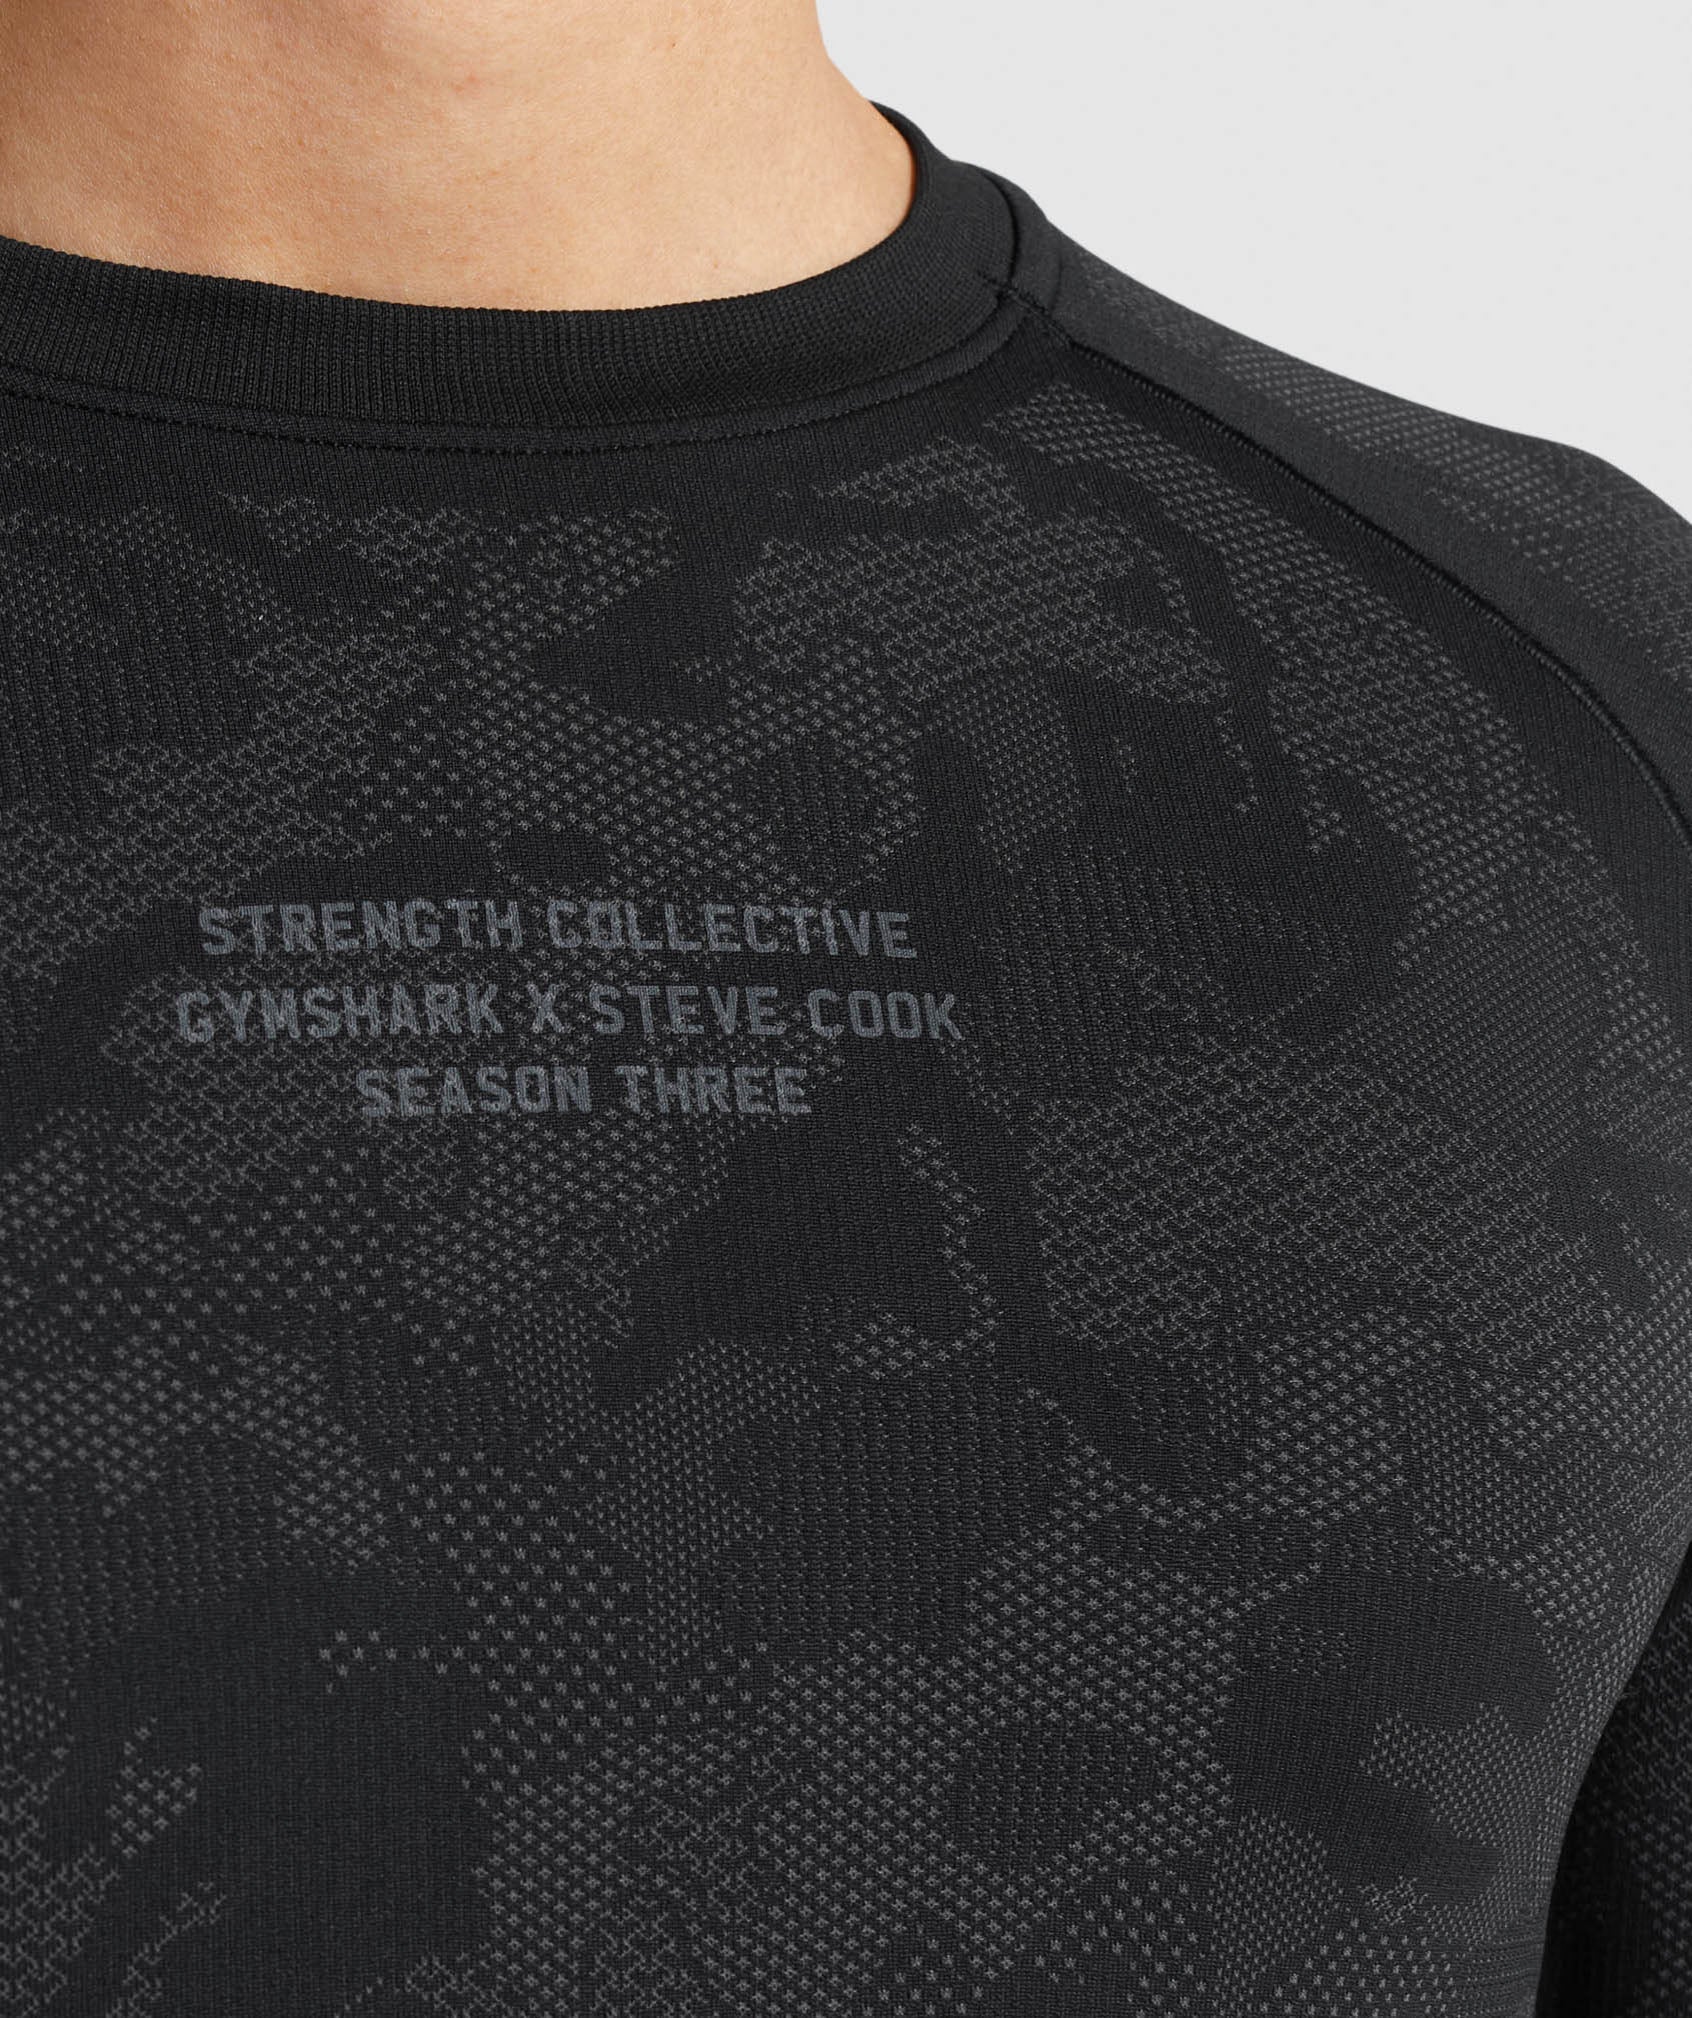 Gymshark//Steve Cook Long Sleeve Seamless T-Shirt